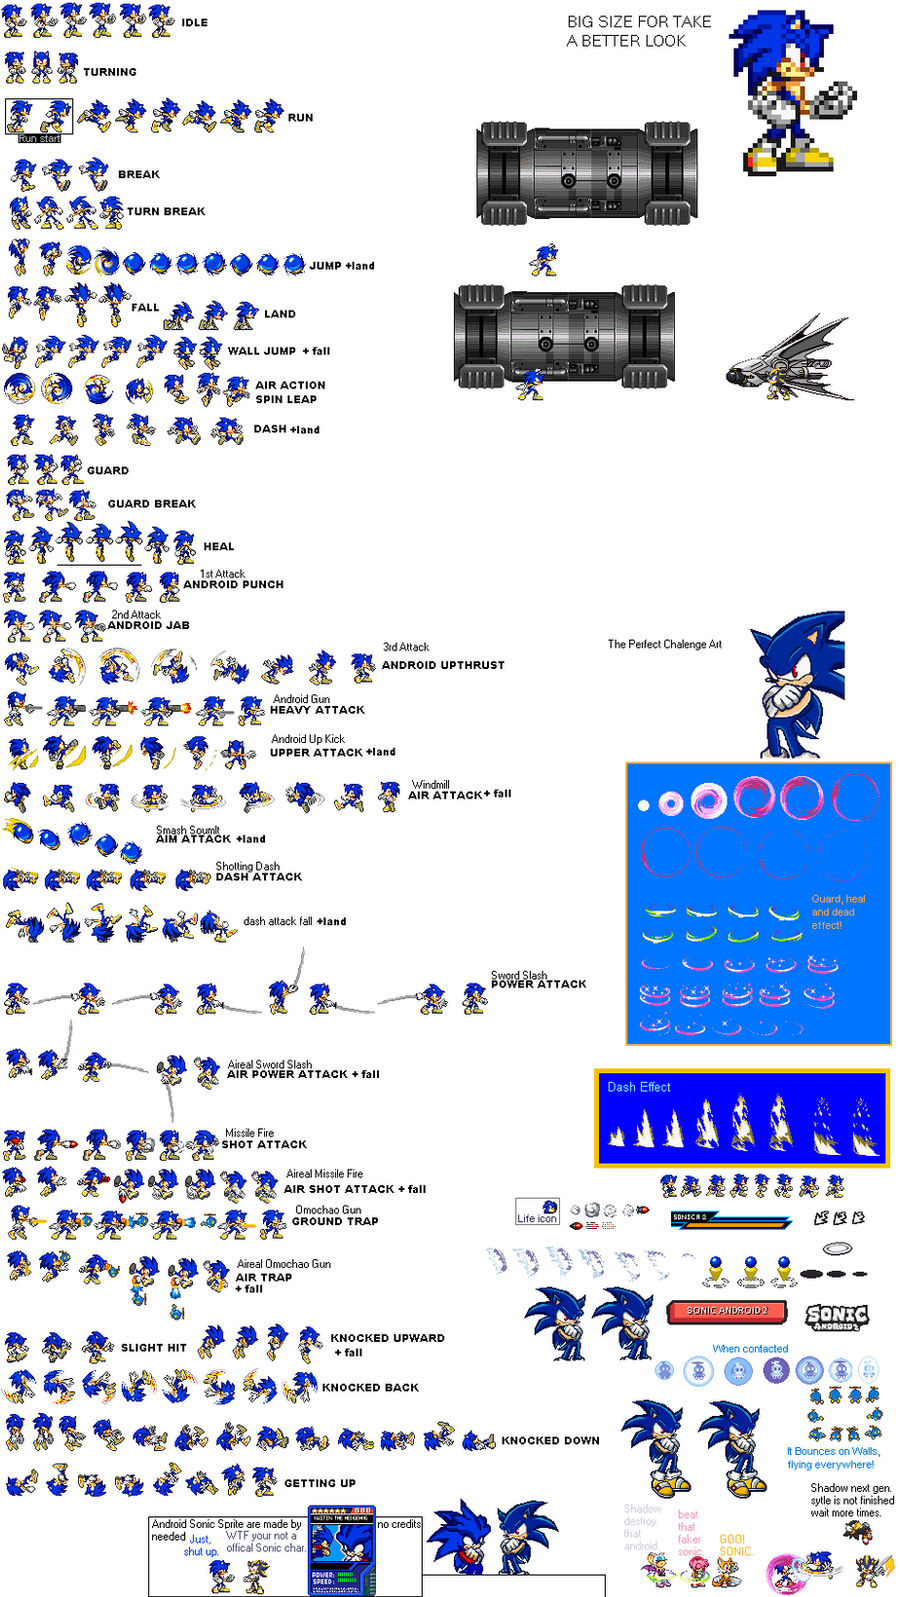 Darkspine Sonic sprites by kaijinthehedgehog on DeviantArt